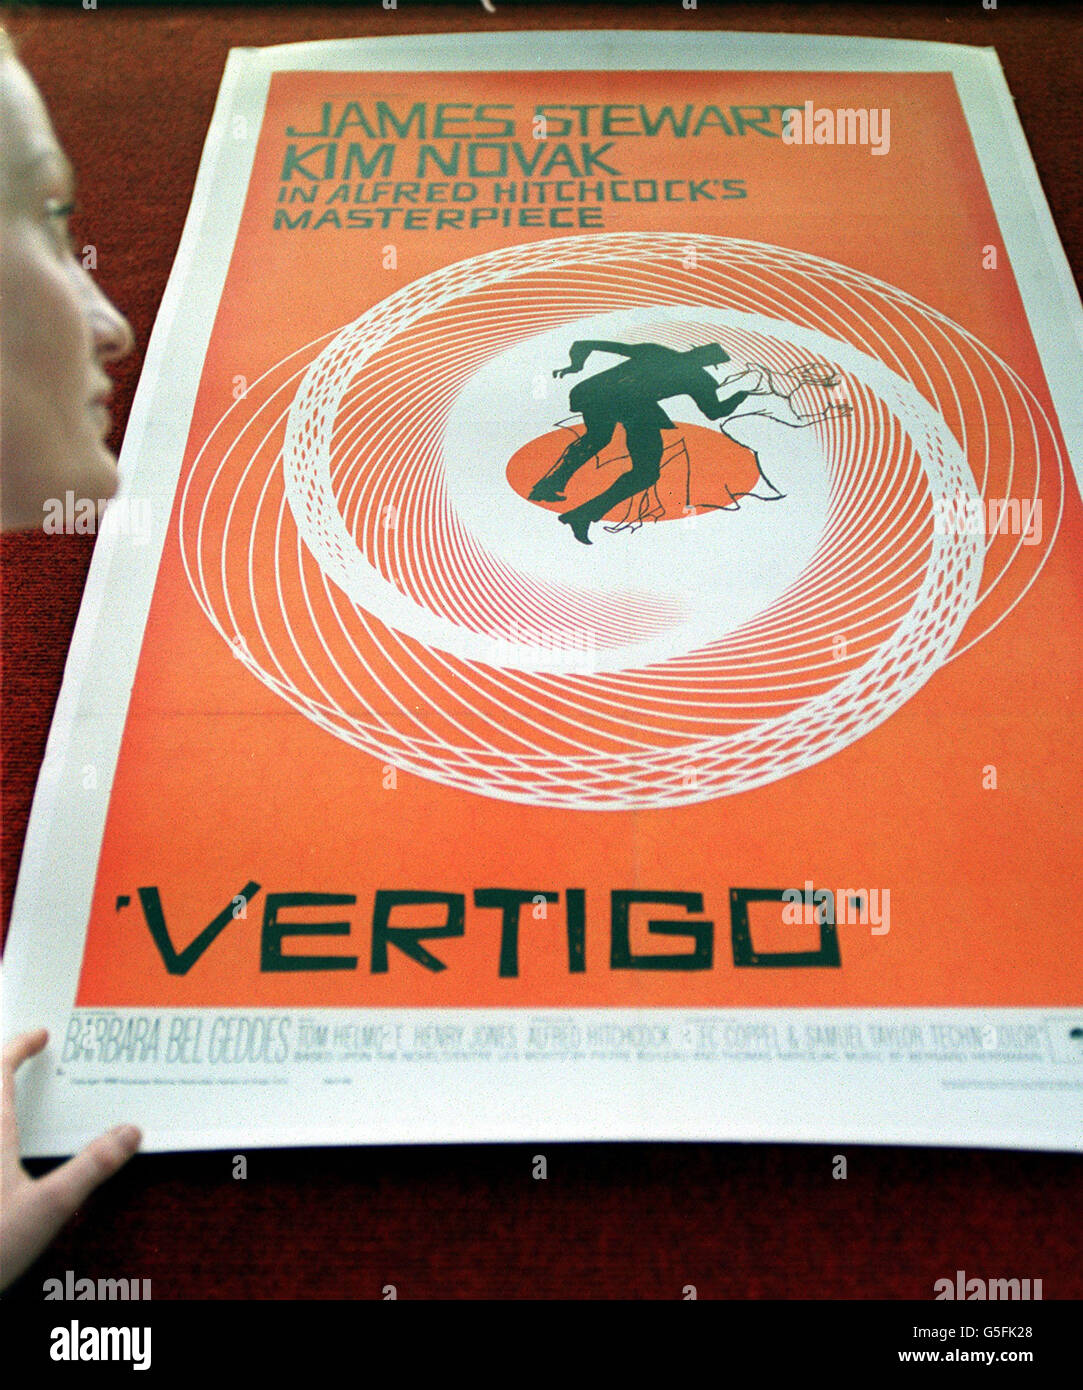 Christies Mitarbeiterin Rachel Dewhurst beim Saul Bass Poster für den Film Vertigo, Teil des Verkaufs der Vintage Film Poster in Christie's South Kensington in London. Das Plakat wird voraussichtlich 700 - 1,000 auf der Auktion. Stockfoto